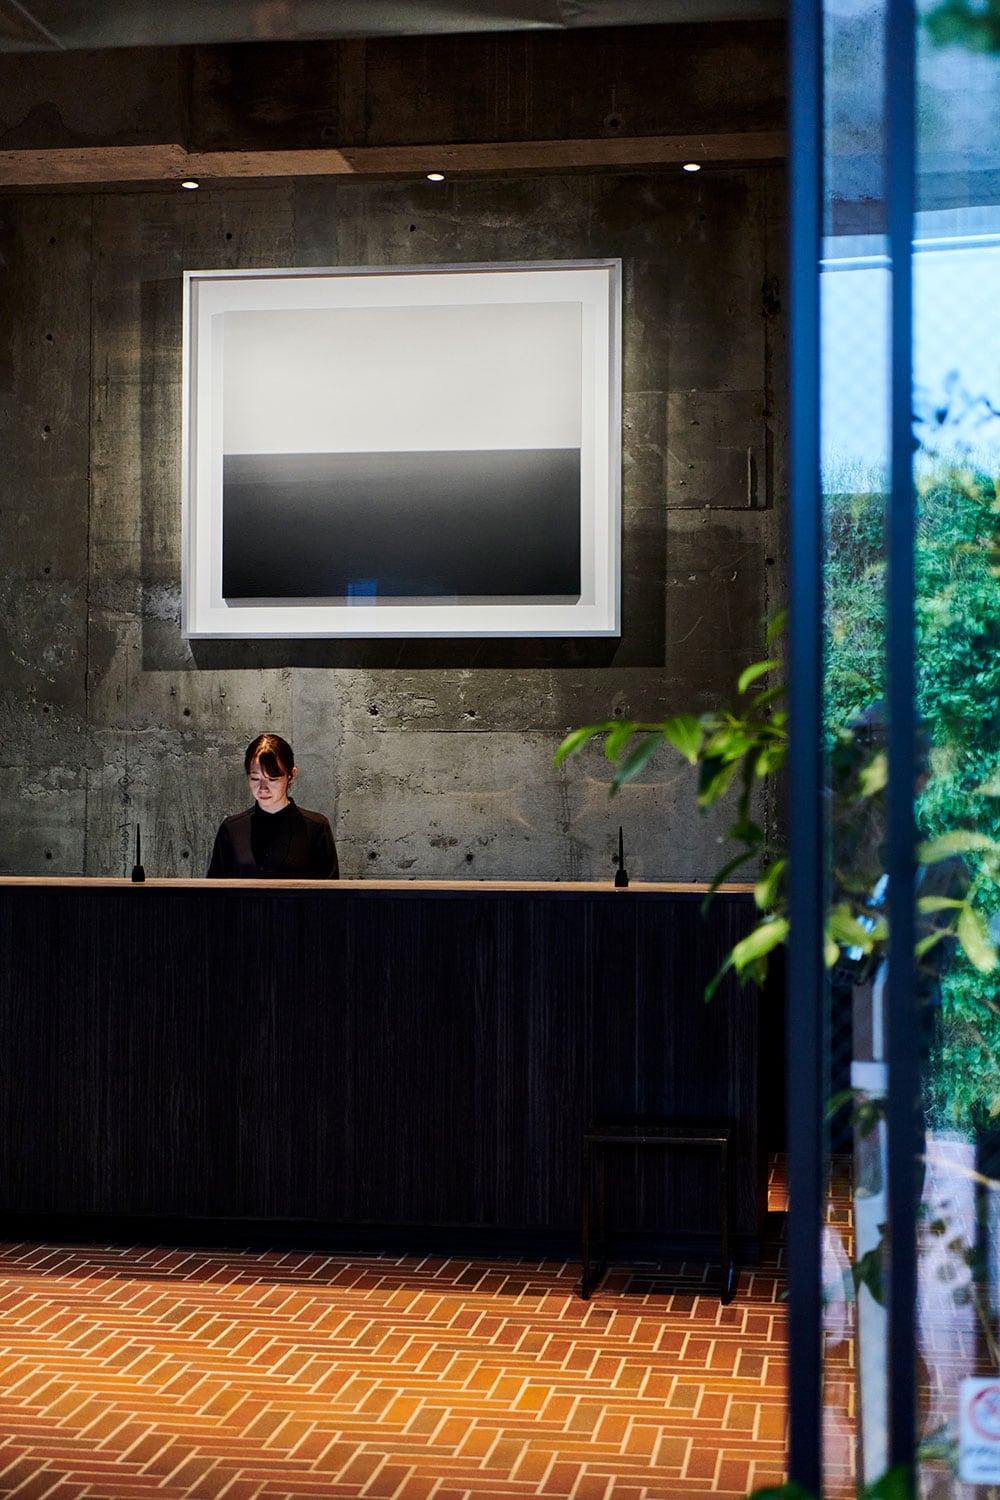 「ホテルが地域に活力をもたらすように」という願いを込めて飾られた杉本博司の《ガリラヤ湖、ゴラン》がゲストを迎える。